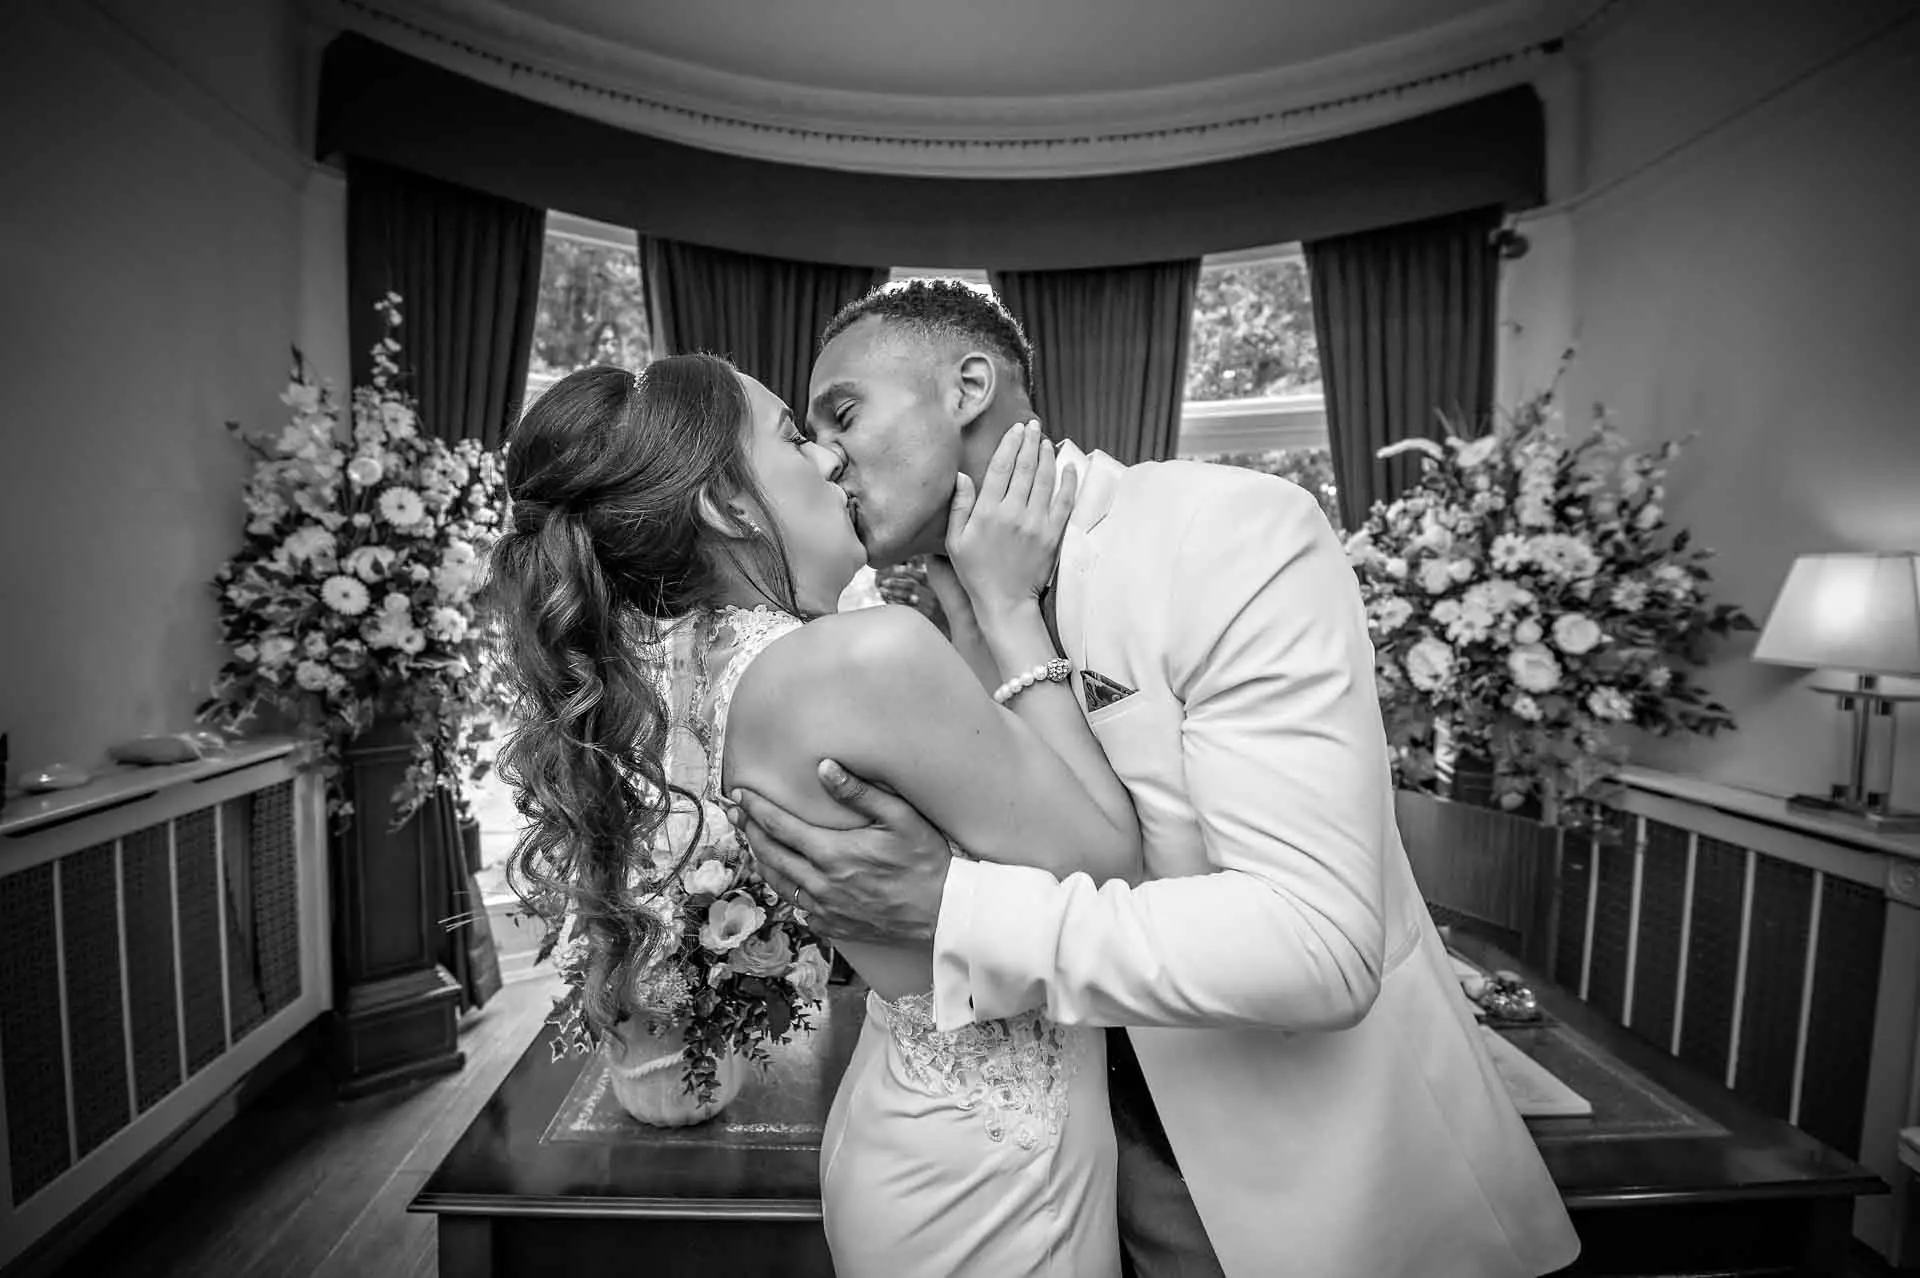 Nieuwgetrouwden delen hun eerste kus in Southwark Register Office voor hun huwelijk